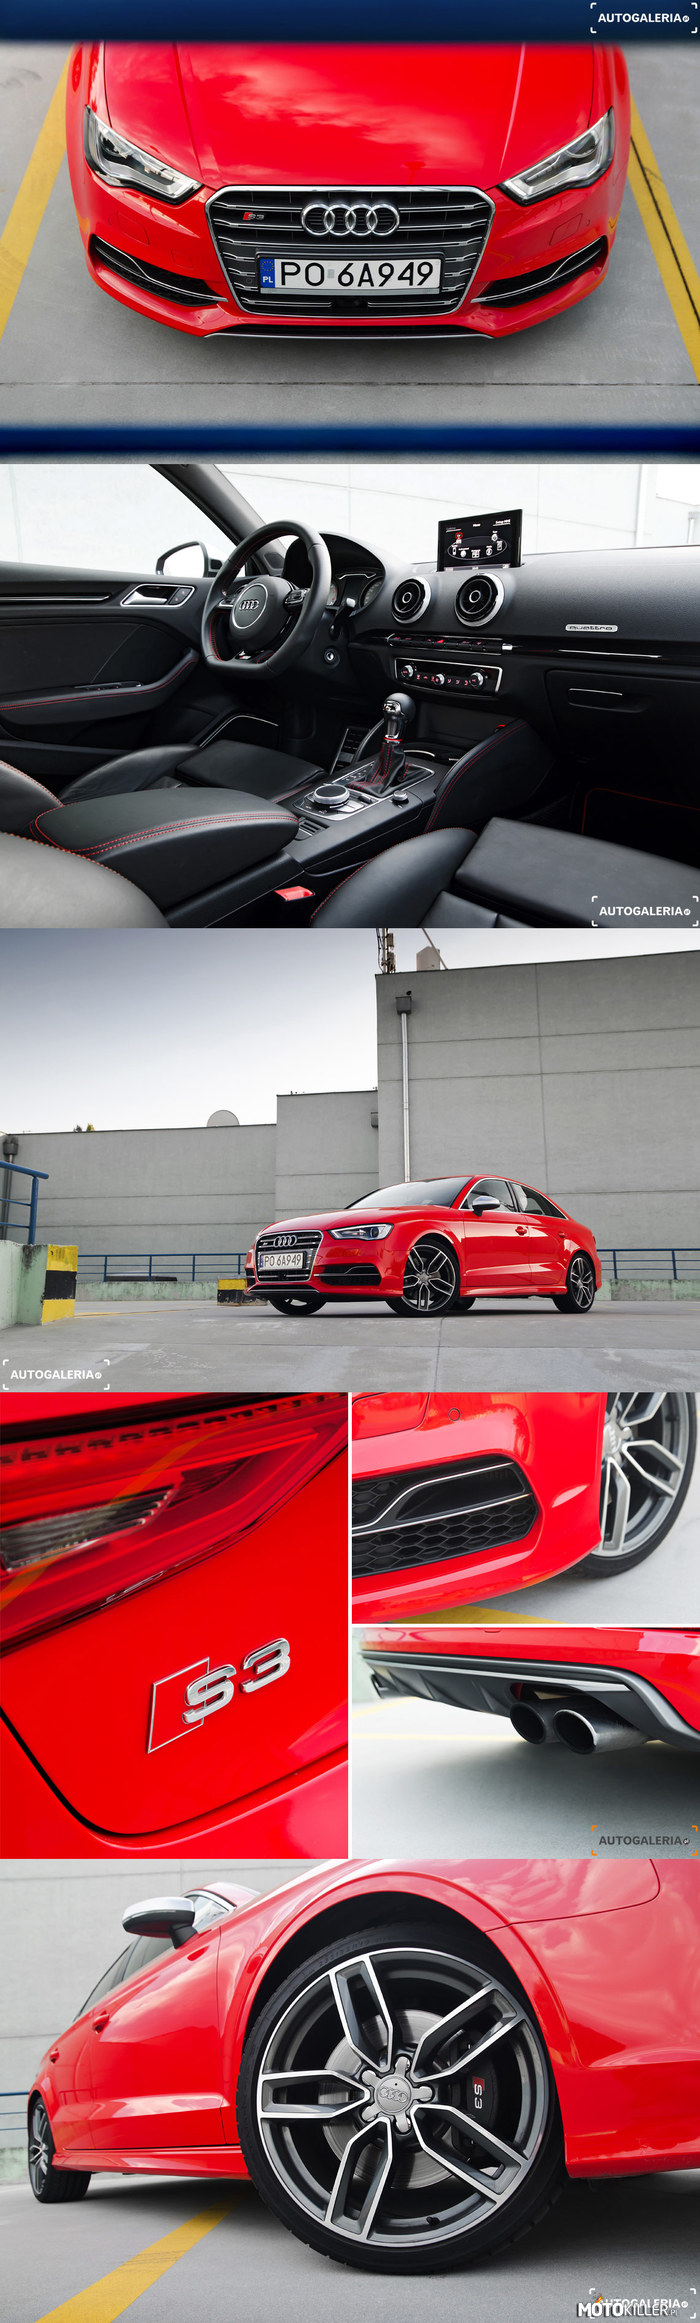 Czerwone i szybkie Audi S3 Limo! – Czerwień nie kłamie - to piekielnie szybki samochód!

Test gorącego sedana od Audi i pełna galeria zdjęć w źródle. 